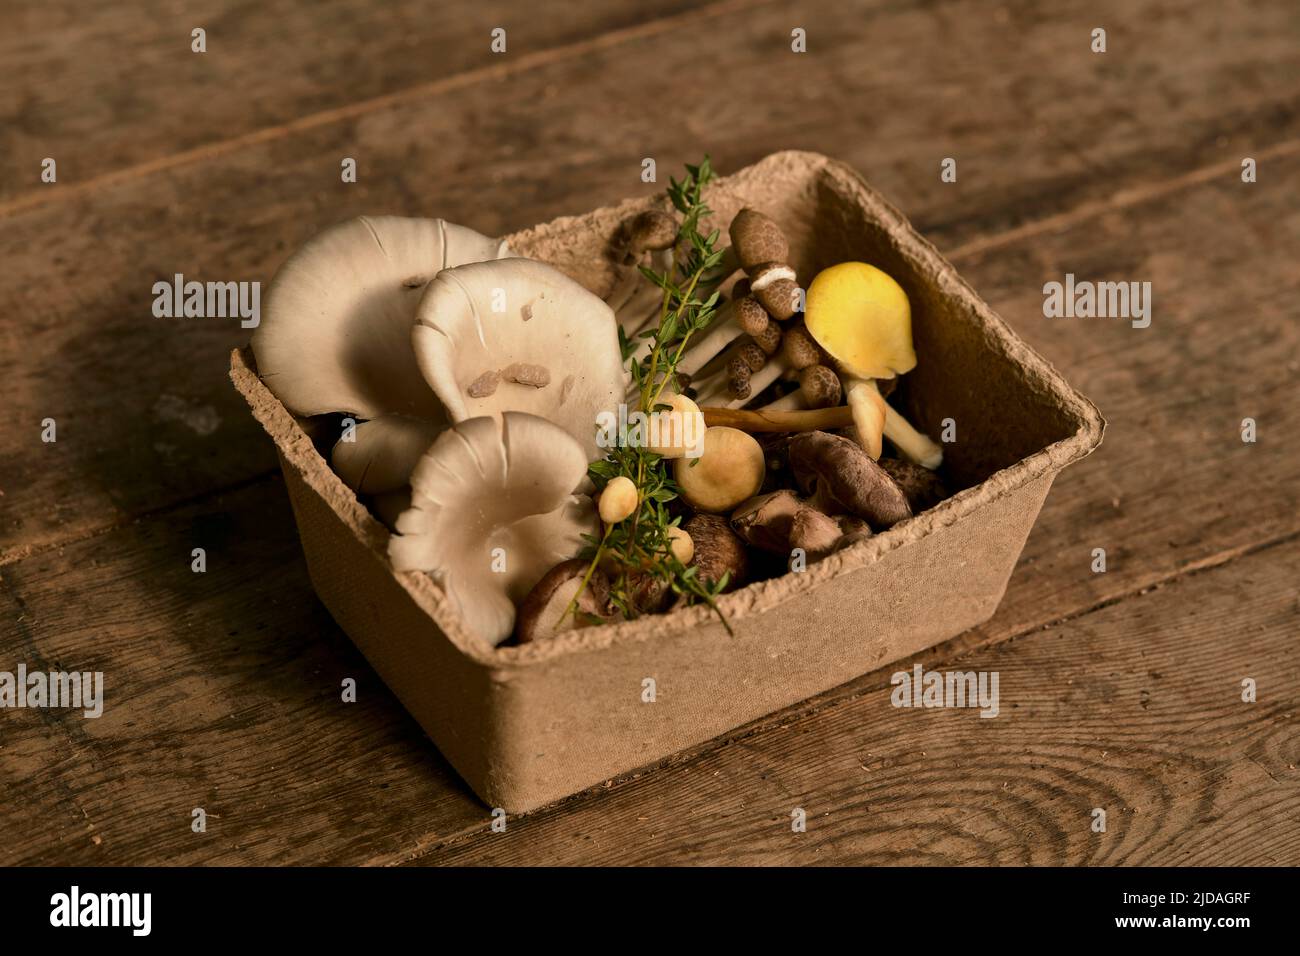 La vie des champignons comestibles dans une boîte en carton, les champignons comestibles cultivés à un fongium. Banque D'Images